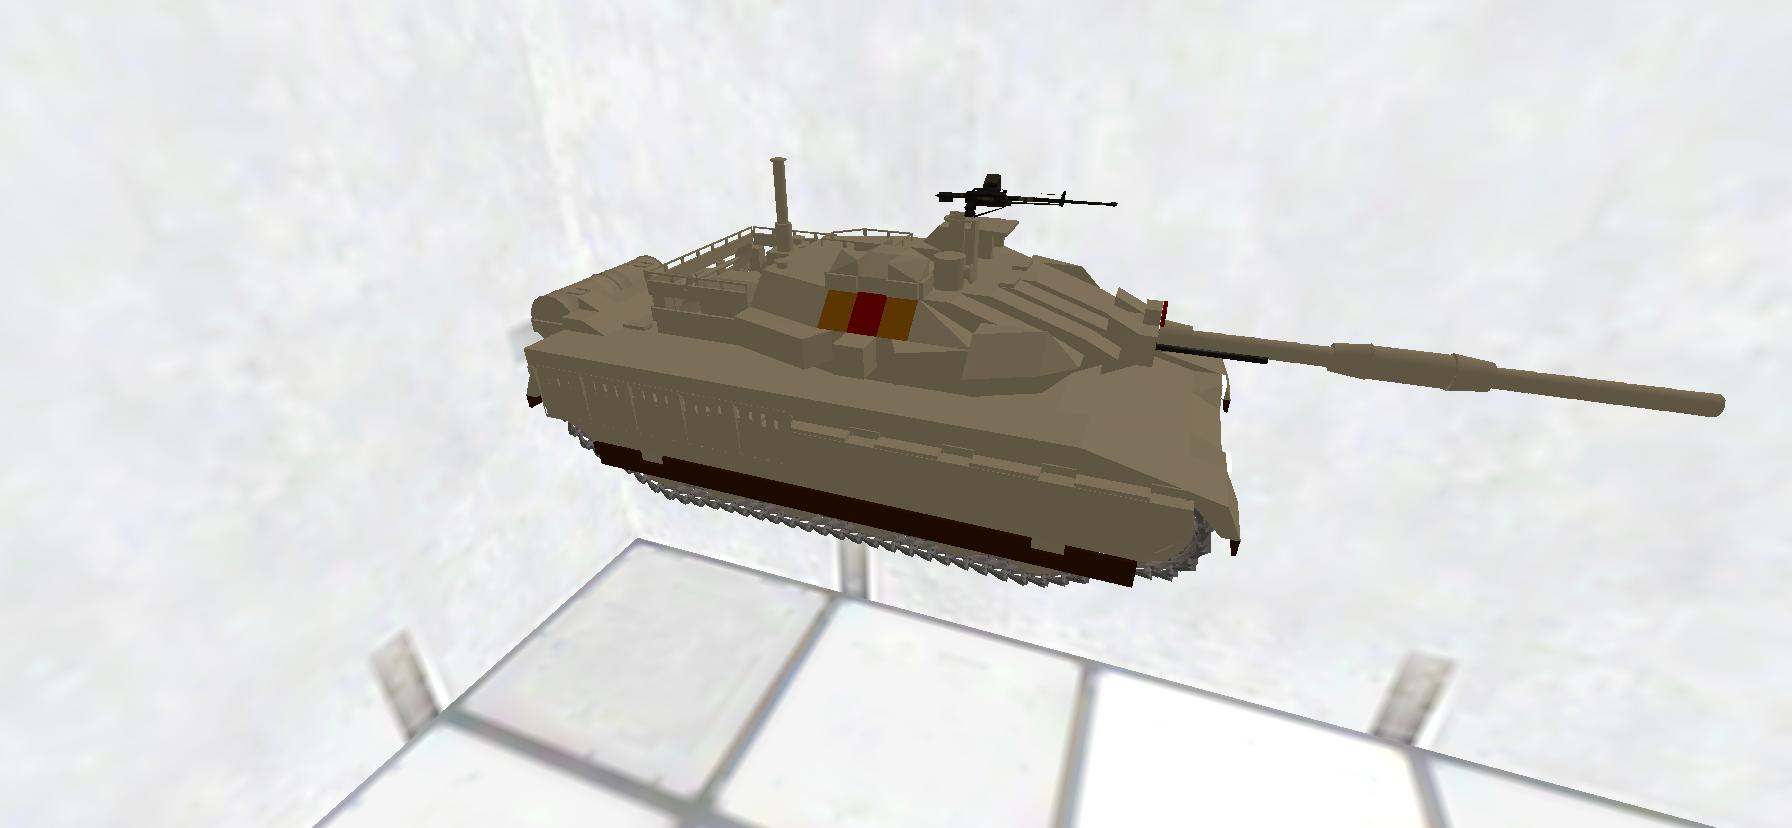 R2A3 (MBT-3) "Rudeus"